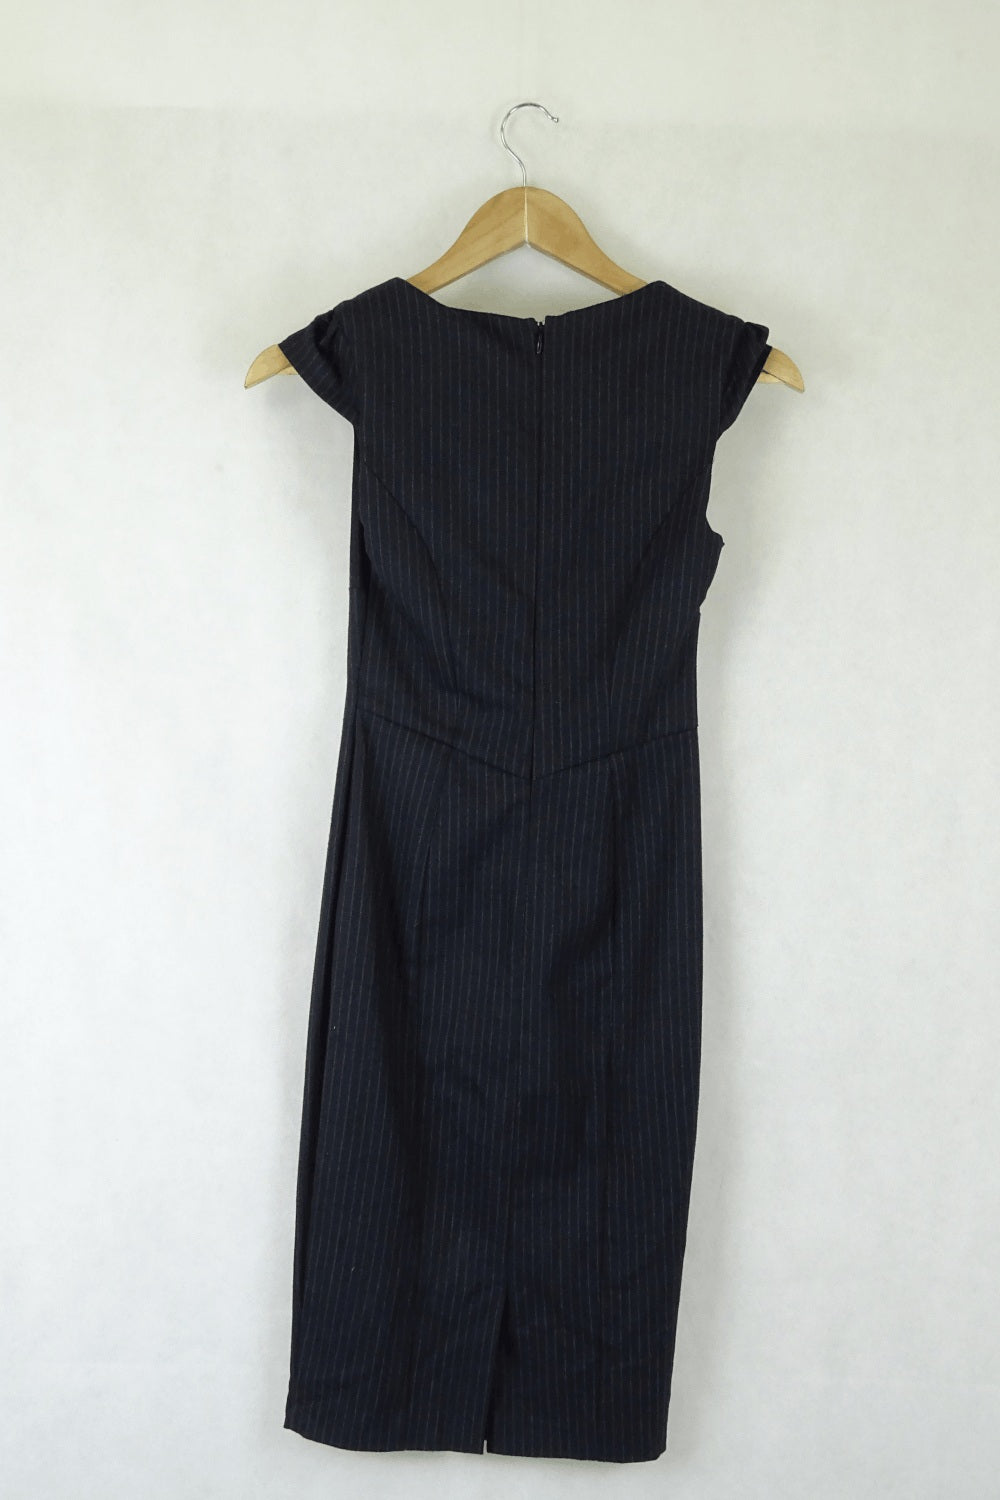 Asos Navy Pin Striped Dress 4